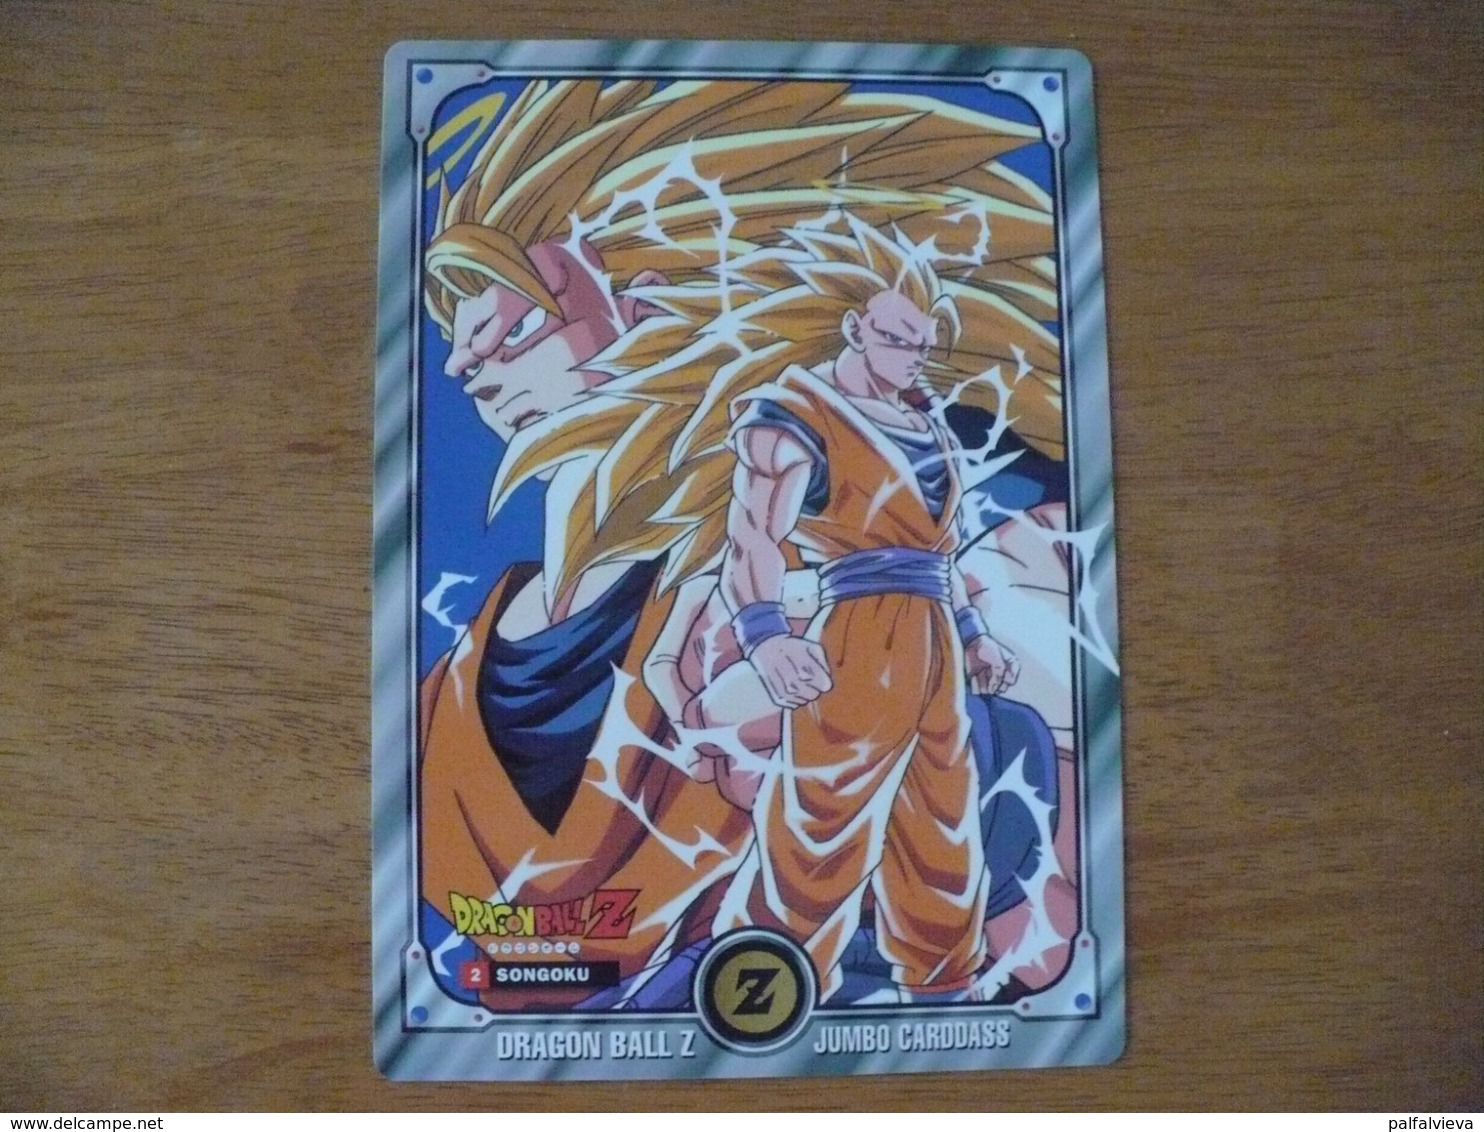 Anime / Manga Trading Card: Dragon Ball 2. (Jumbo ) - Dragonball Z